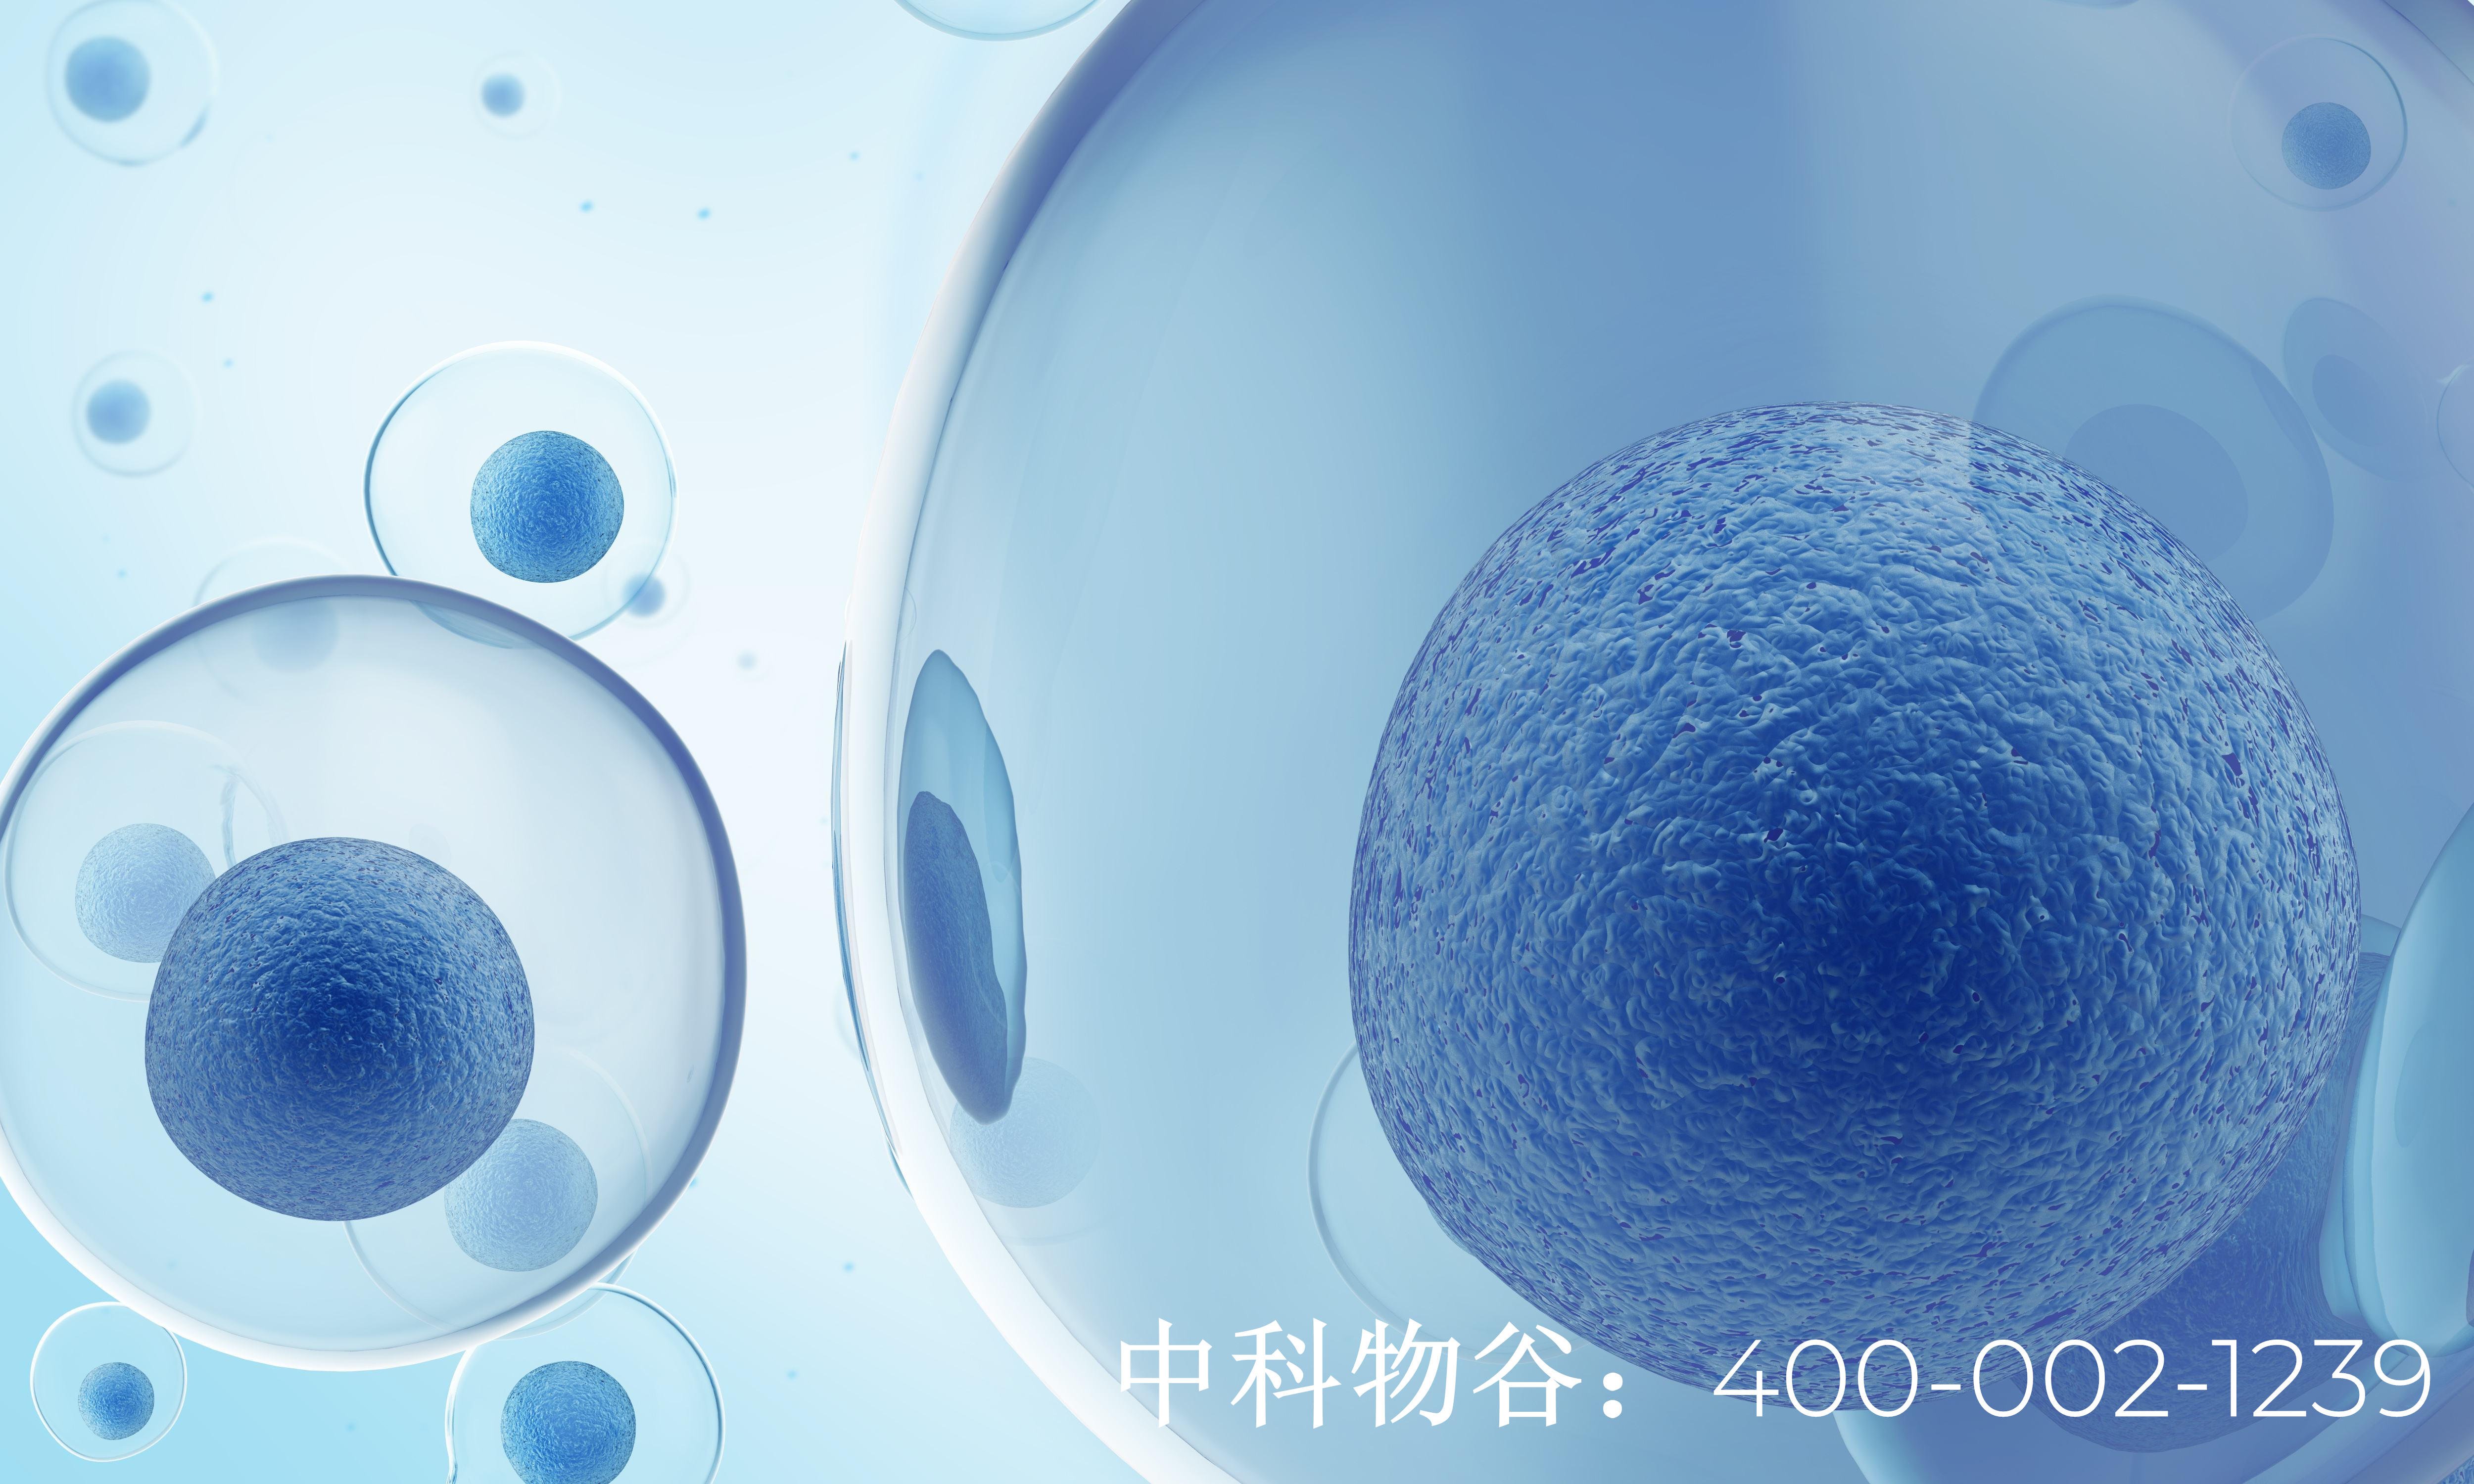 中国批准的干细胞医院有哪些